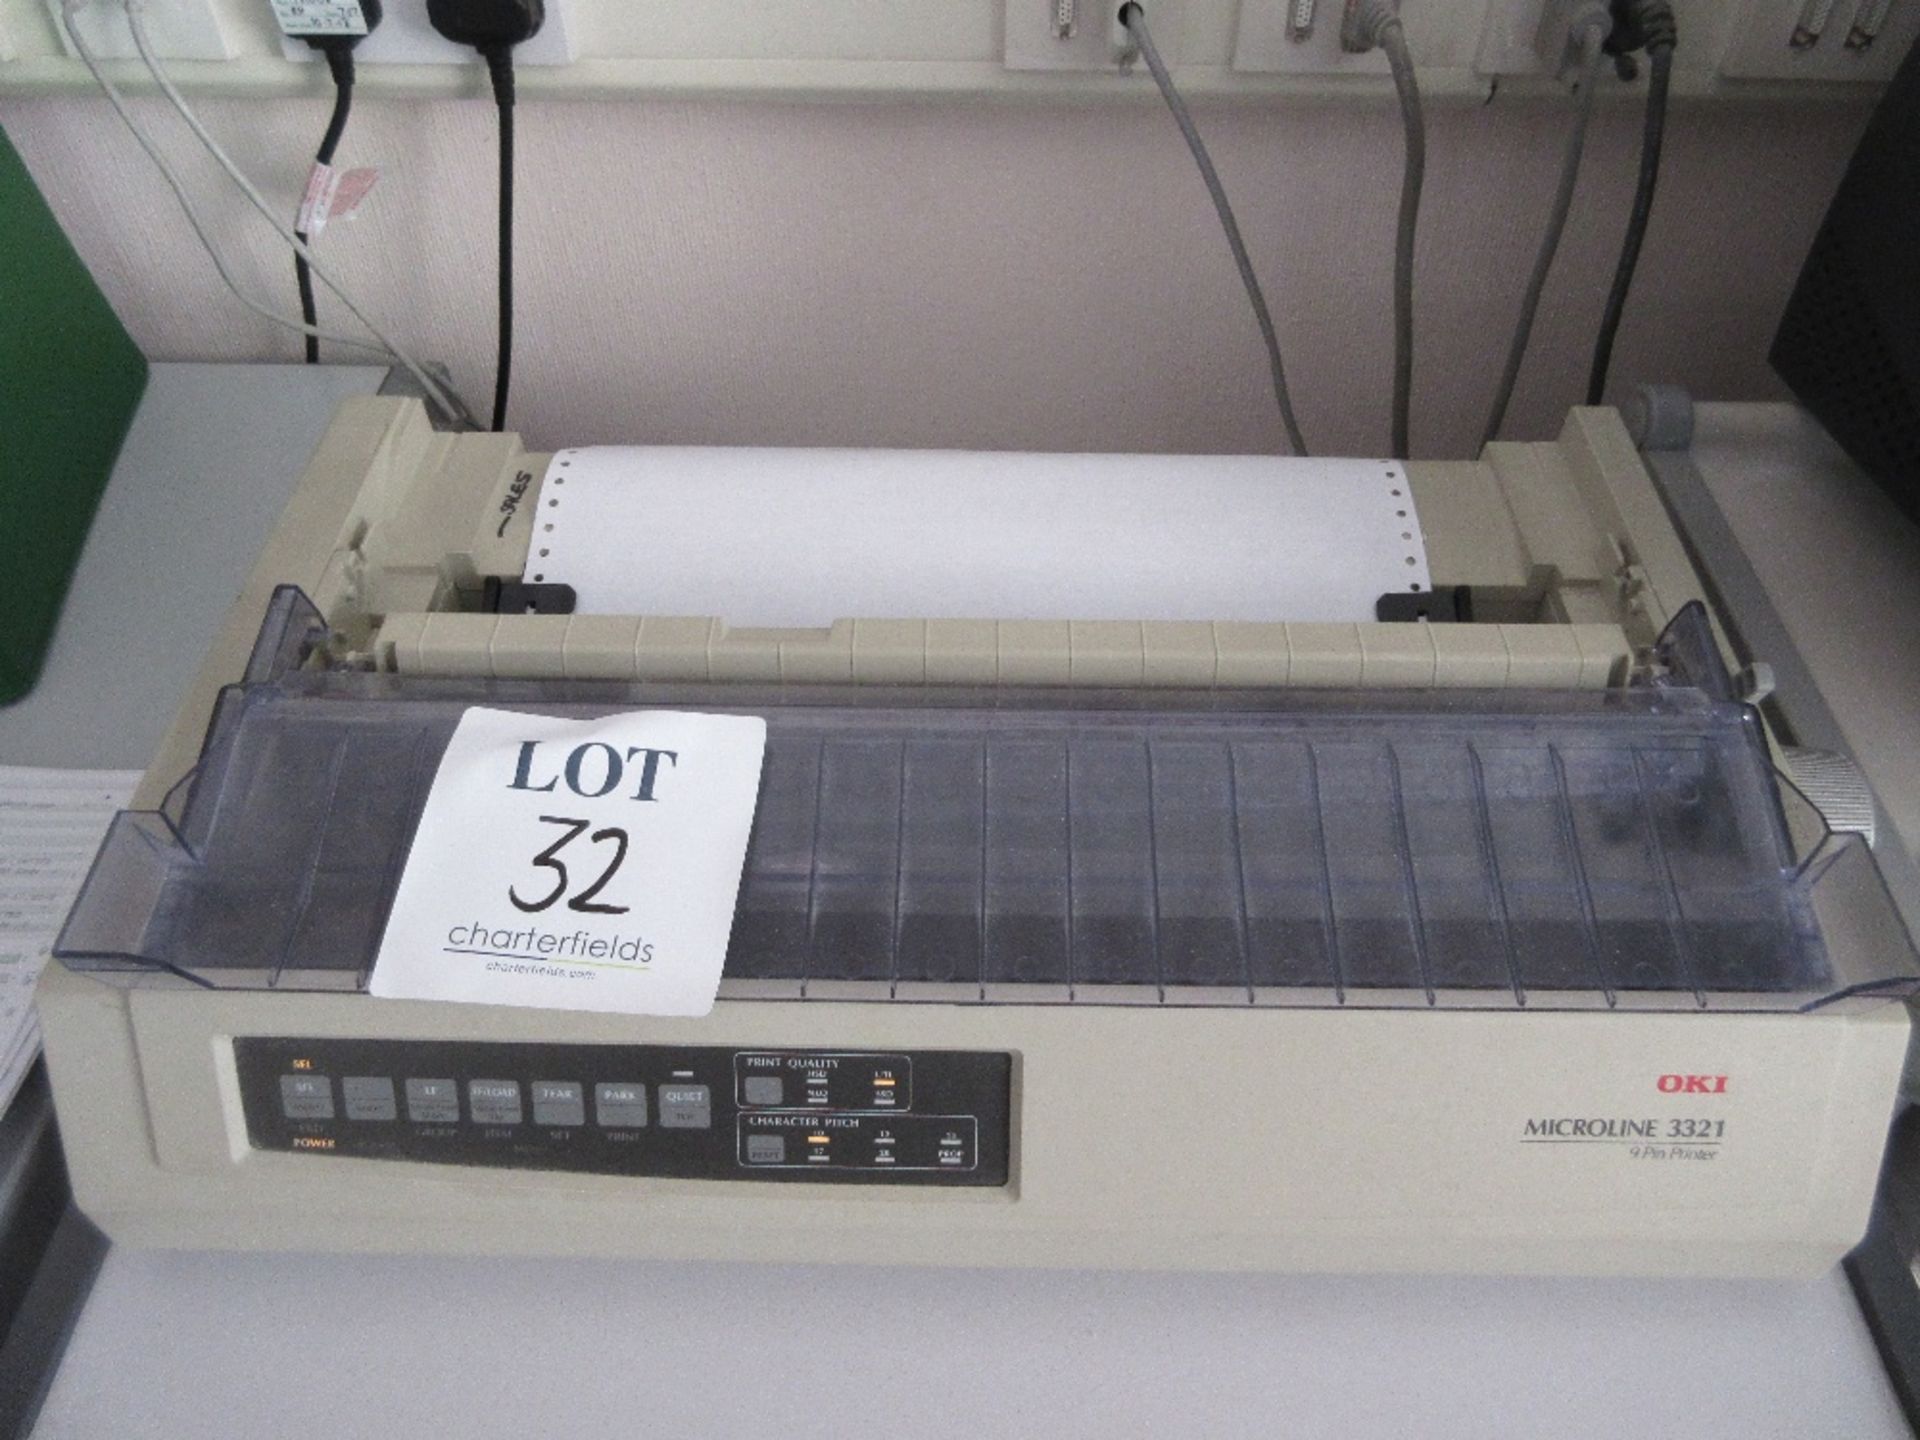 OKI 3321 dot matrix printer